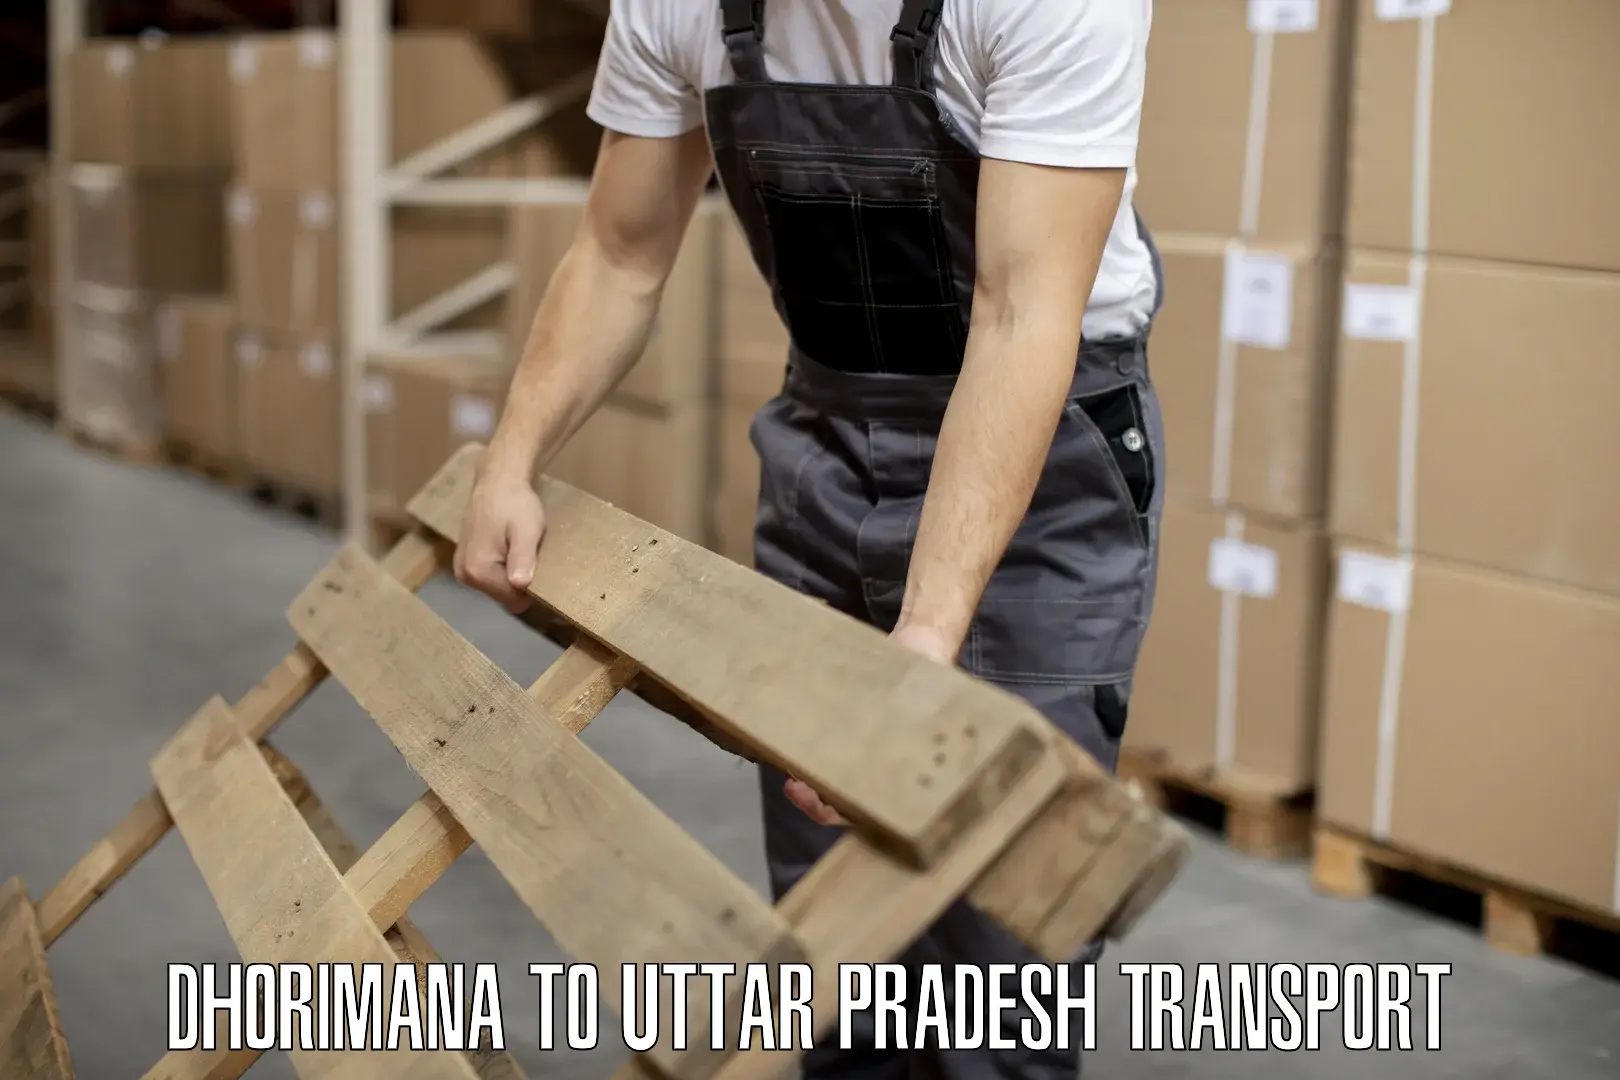 Furniture transport service Dhorimana to Sahatwar